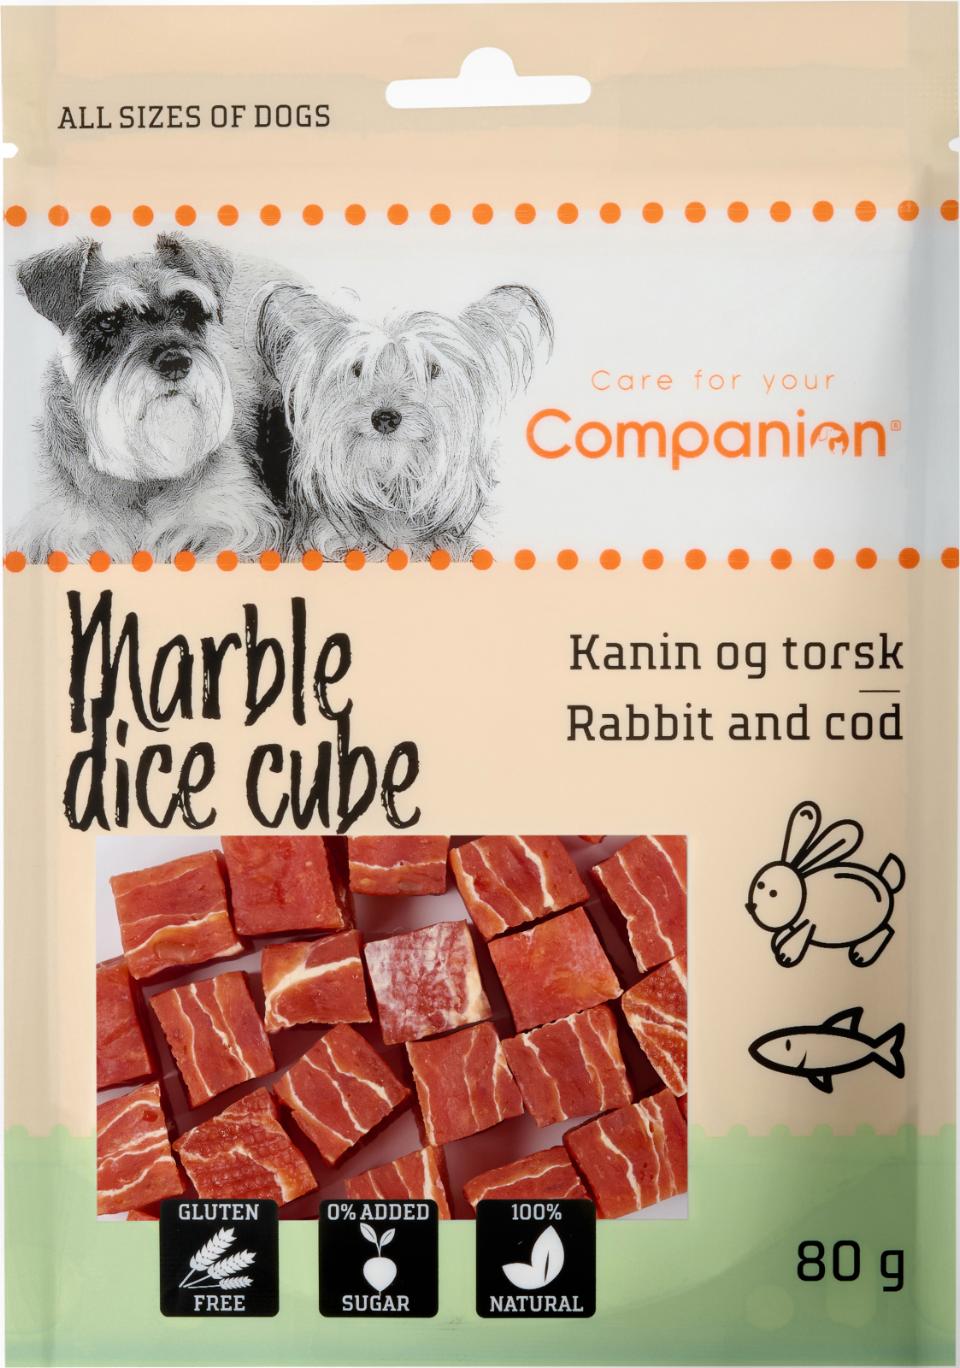 Companion marble dice cube - kanin og torsk 80g.